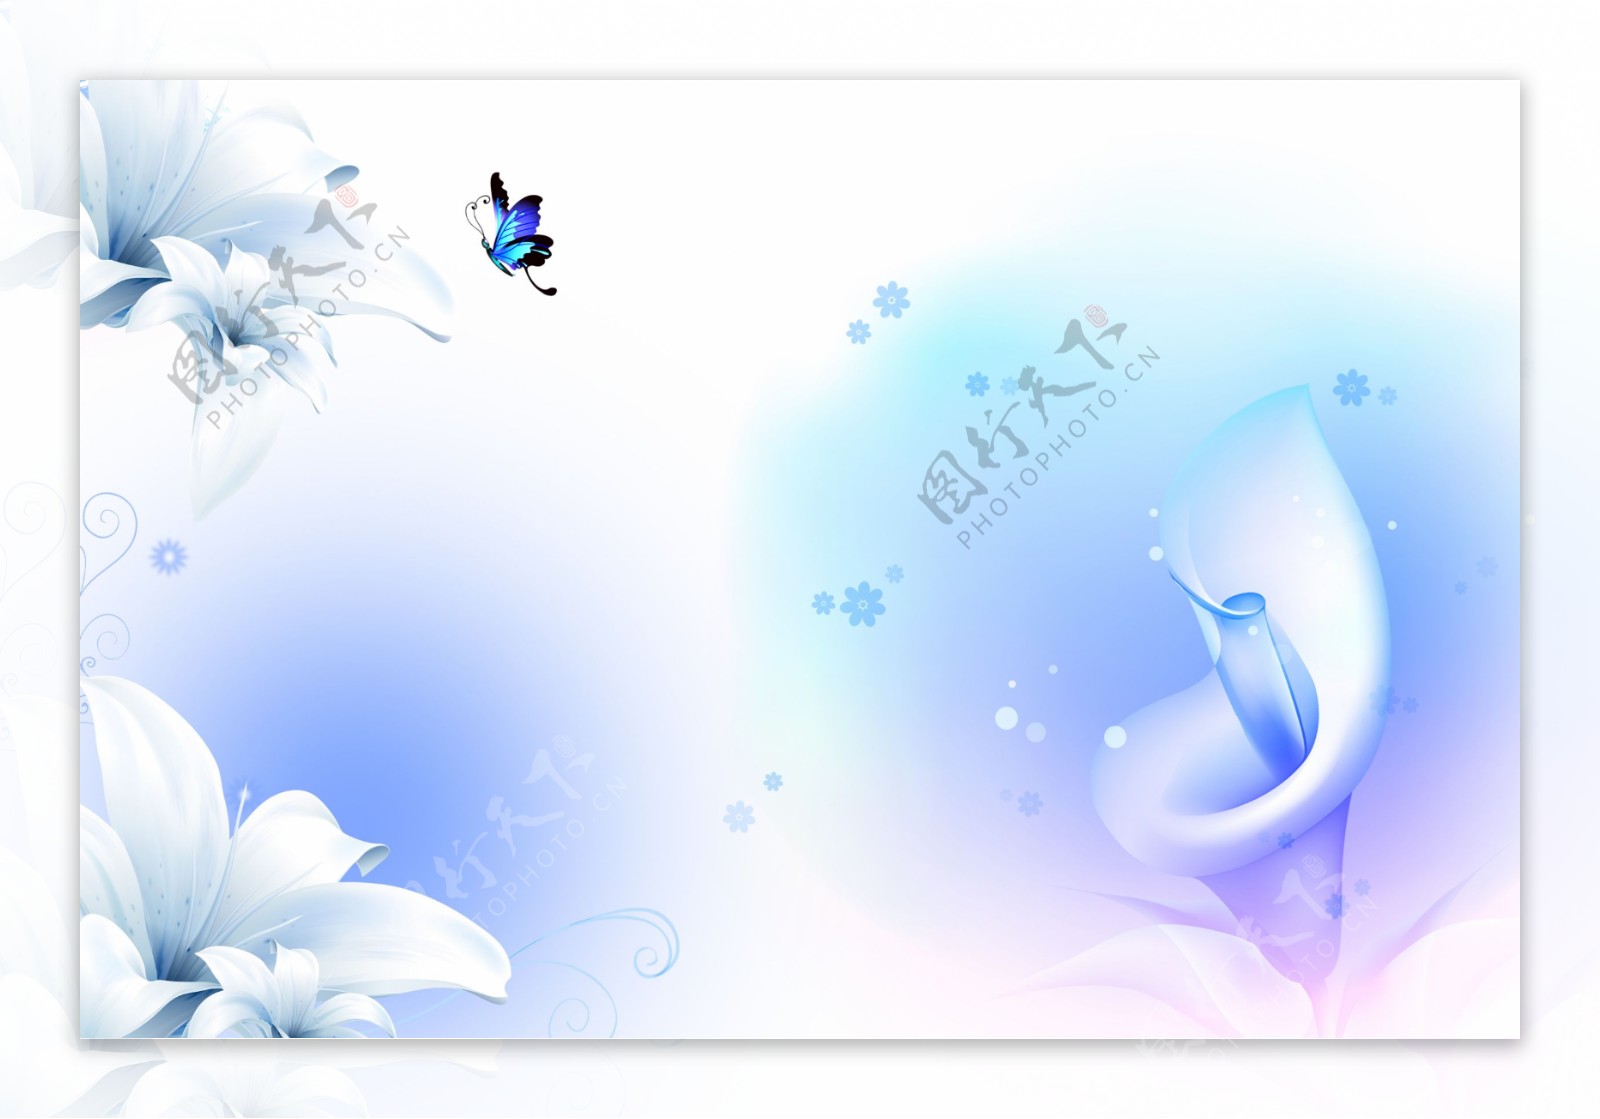 蓝色蝴蝶花朵装饰画素材